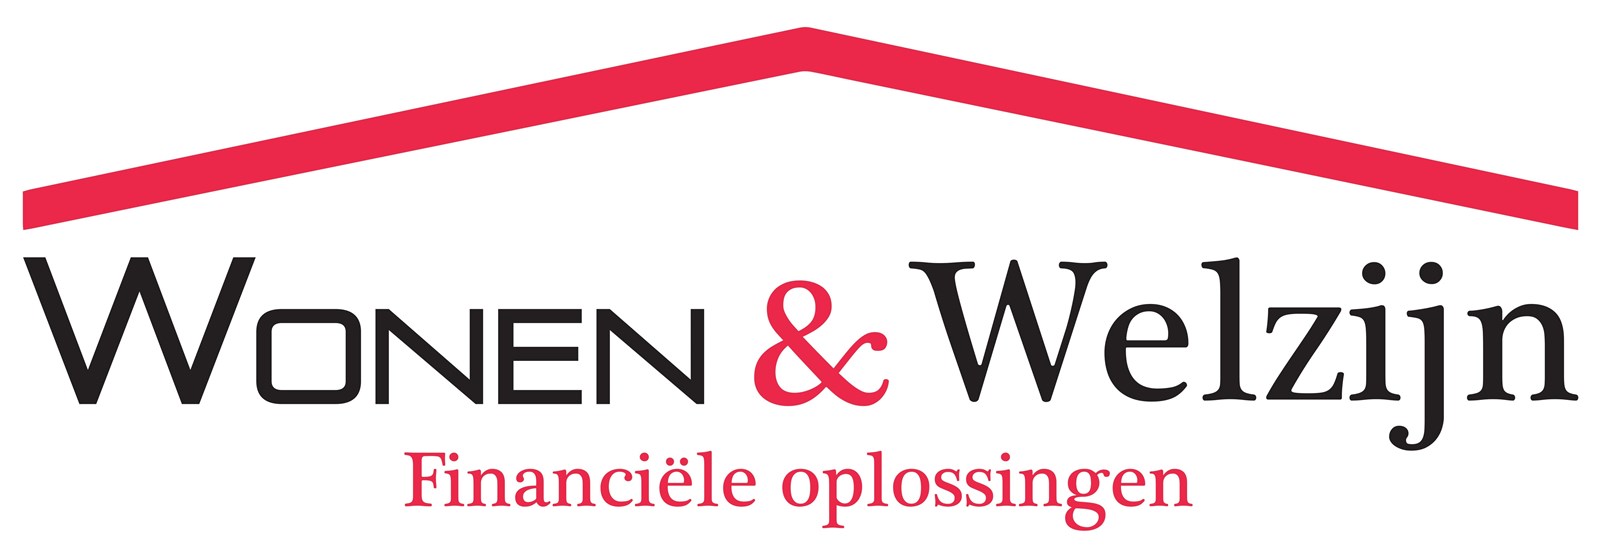 Logo van Wonen & Welzijn  